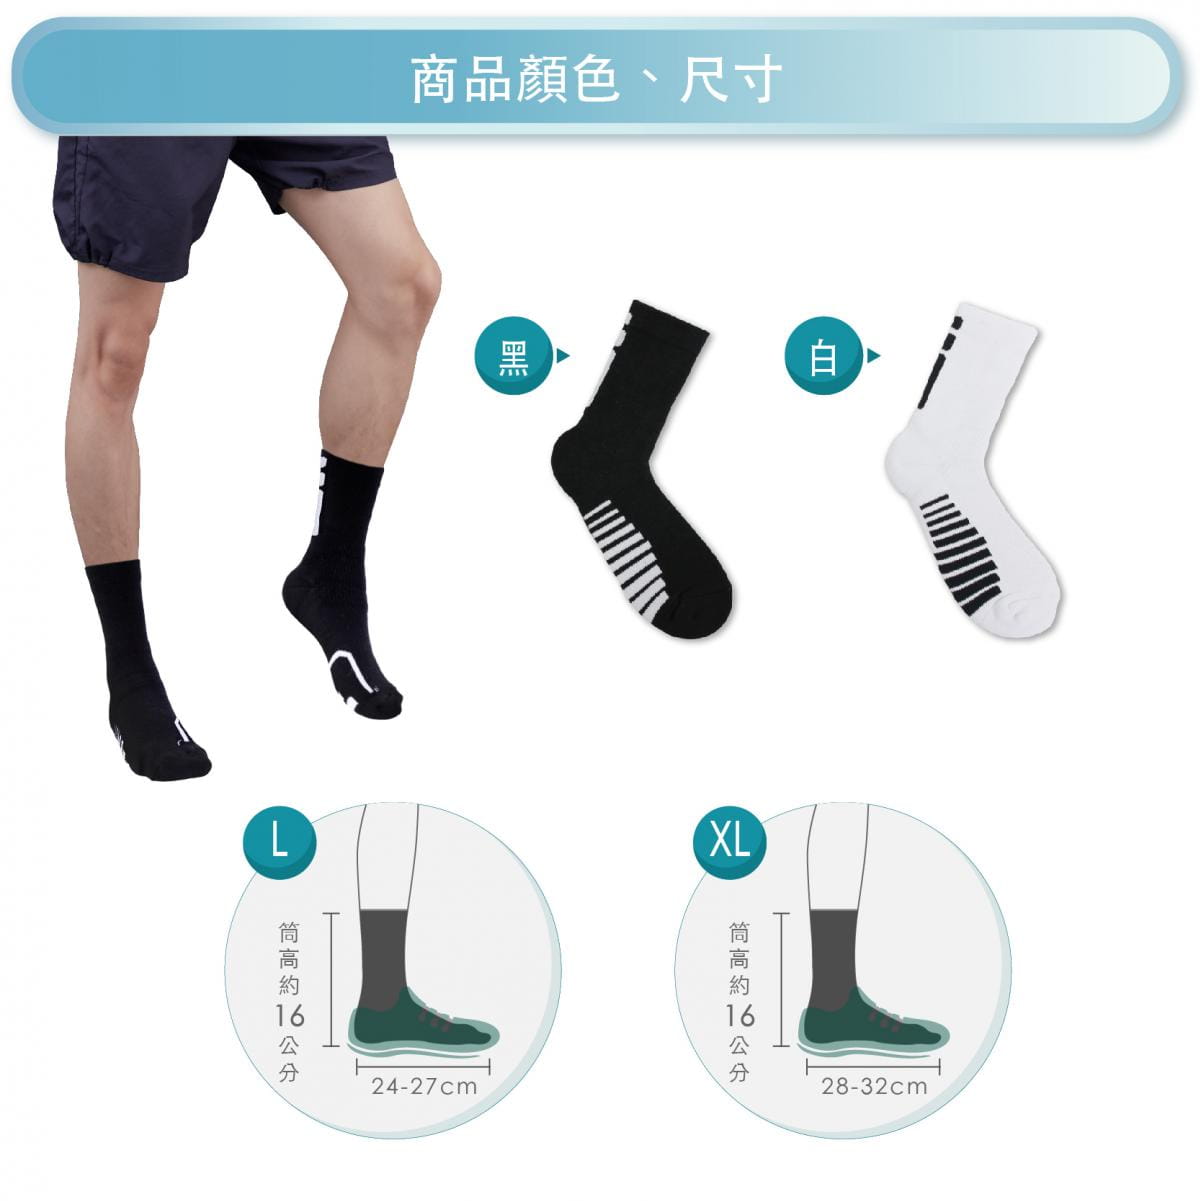 【FAV】厚底護踝機能運動襪 5